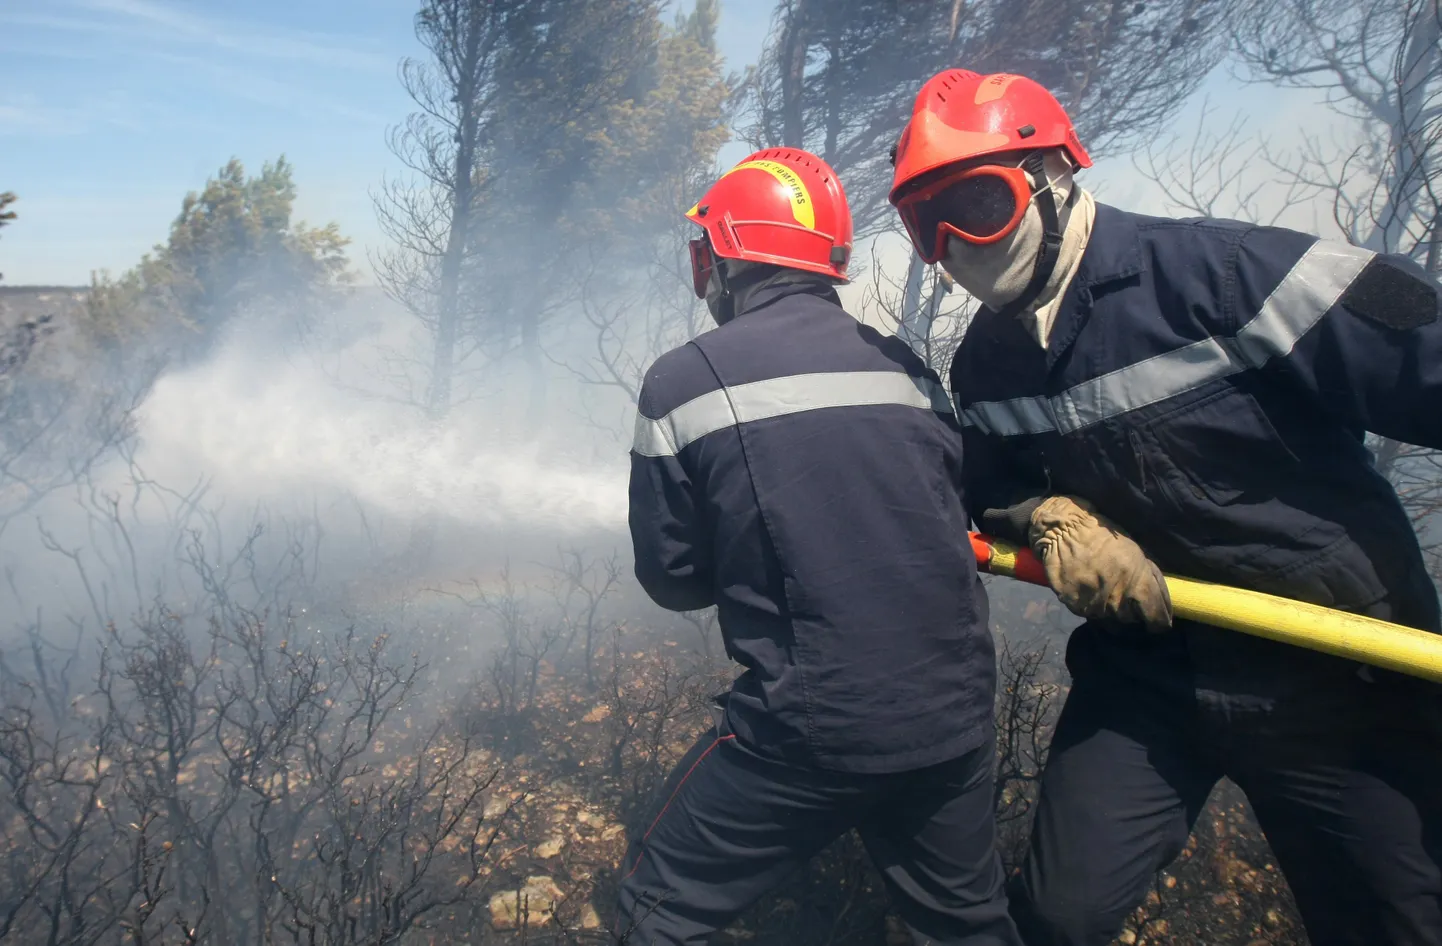 Prantsuse tuletõrjujad võitlemas metsapõlenguga